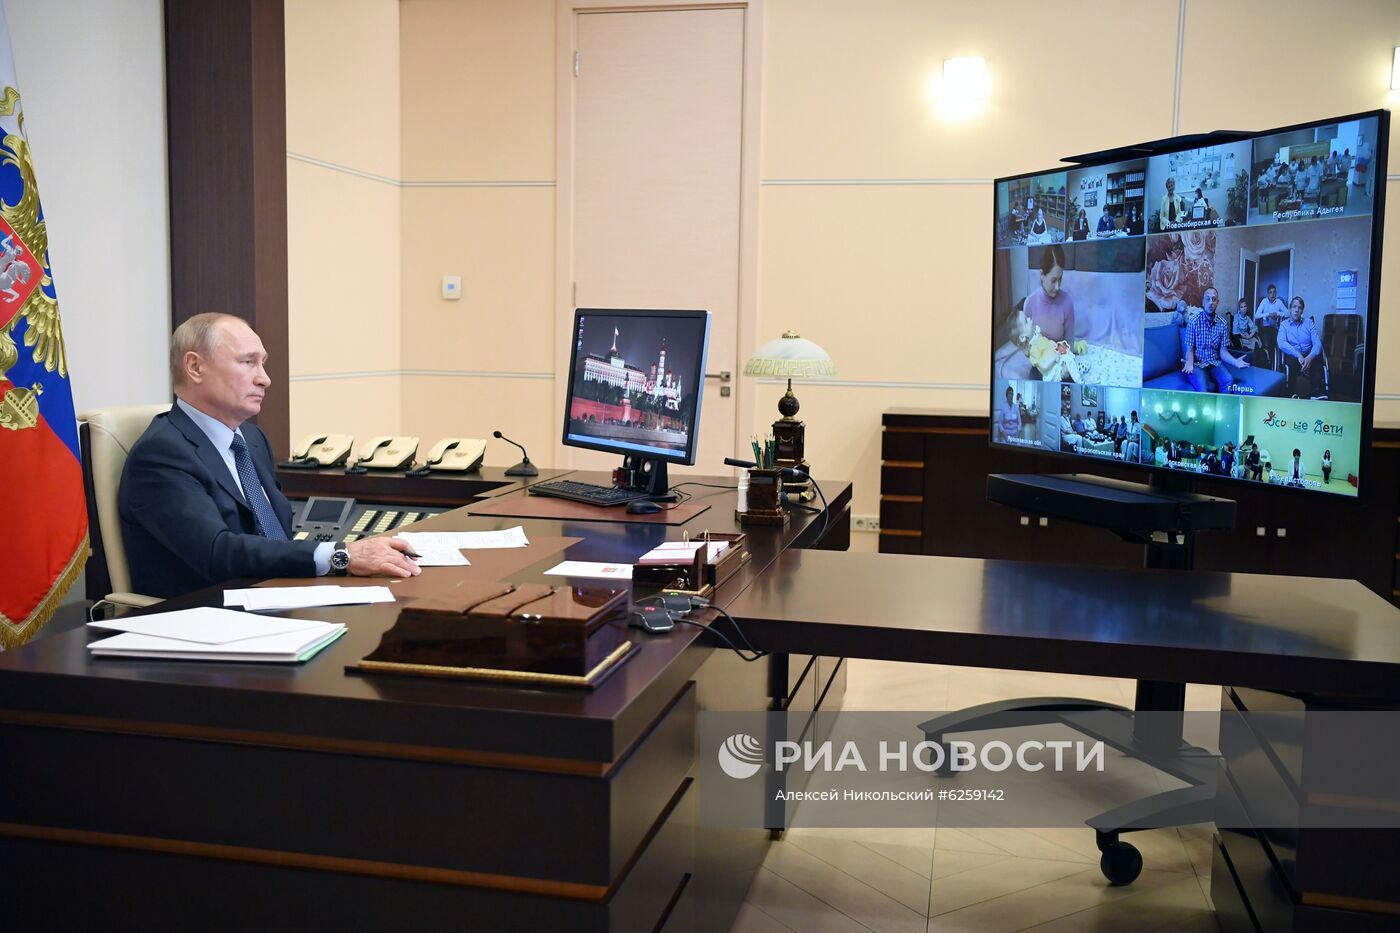 Президент РФ В. Путин провел встречу с социальными работниками госучреждений и НКО